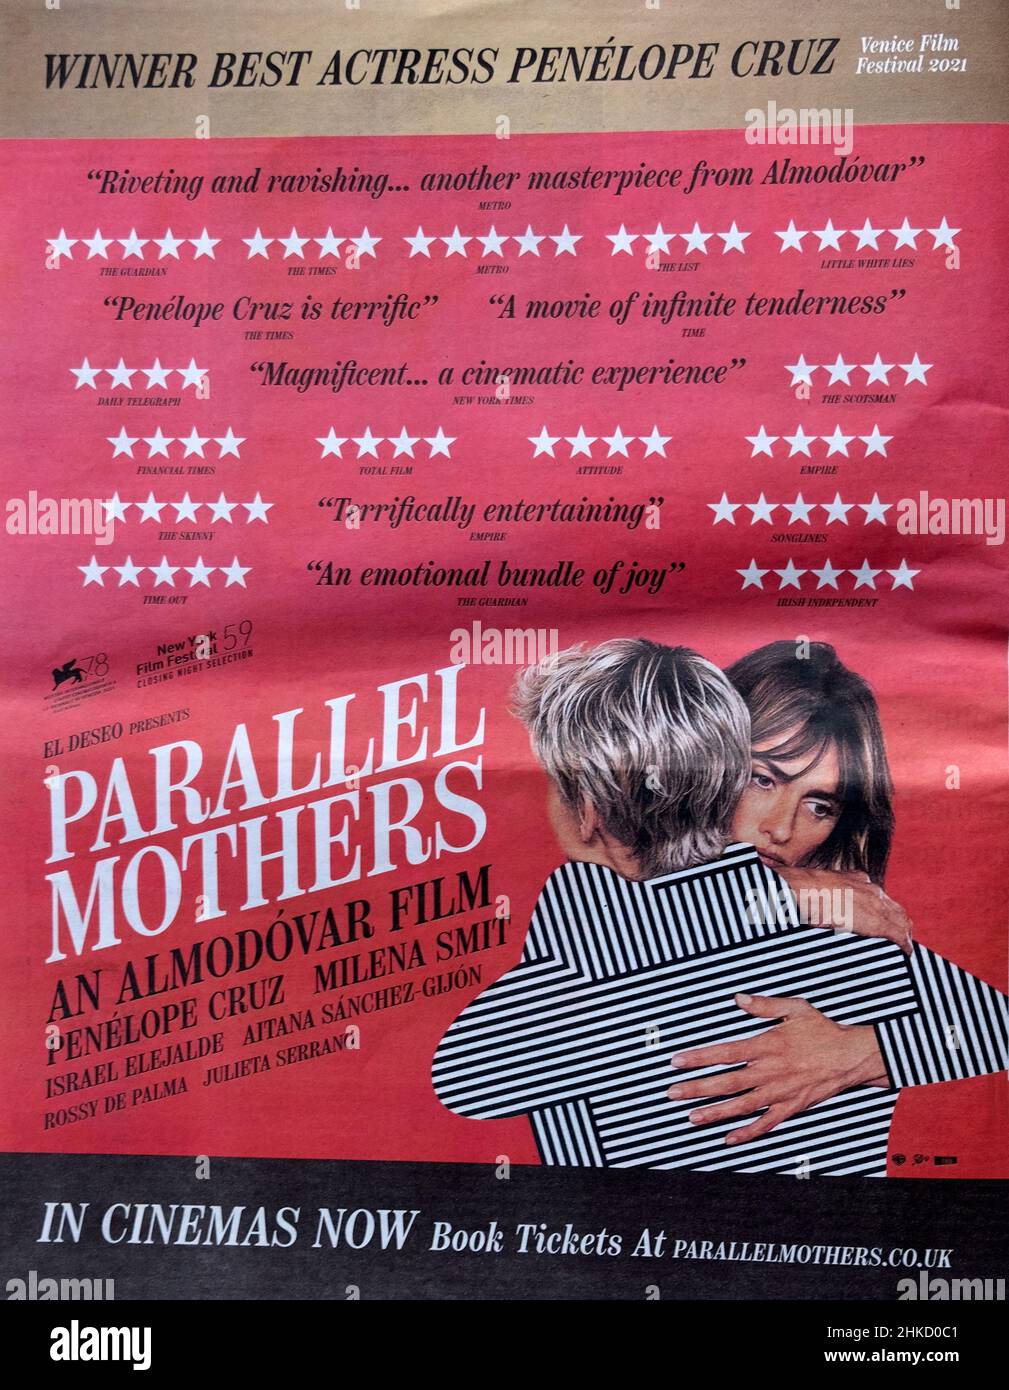 Werbung für Pedro Almodovar Film Parallel Mothers mit weiblichen Schauspielerinnen Penelope Cruz und Milena Smit in der britischen Zeitung Stockfoto